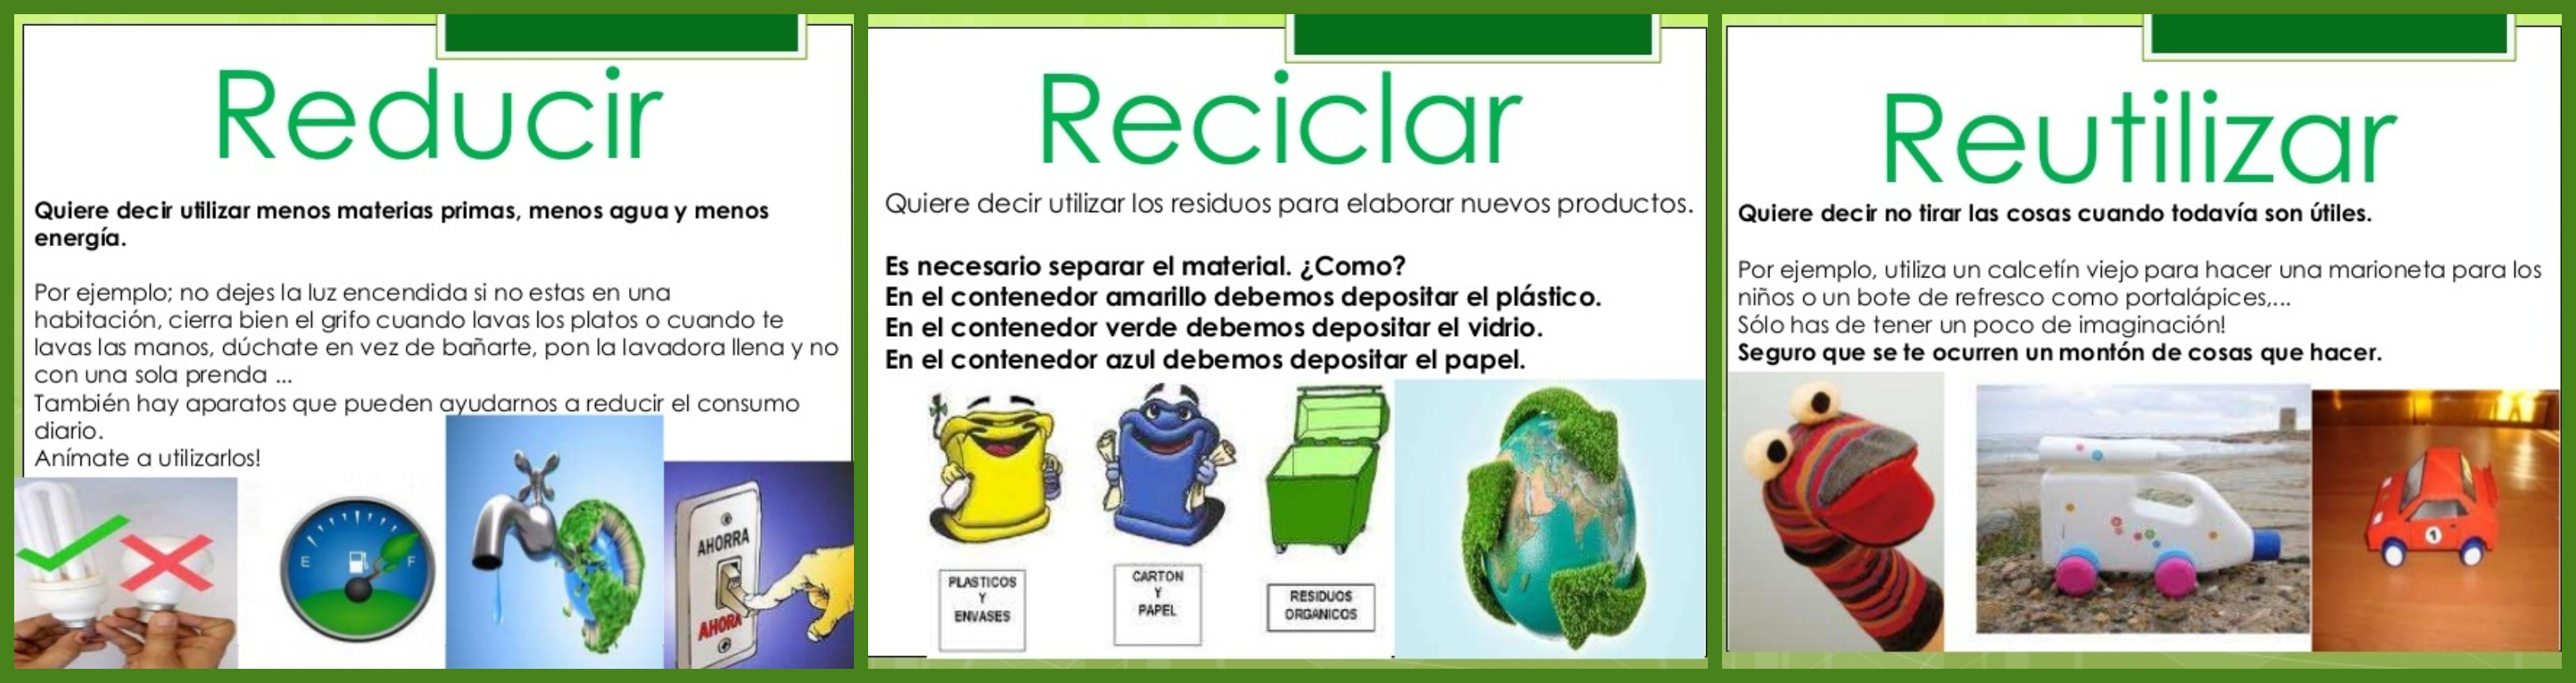 conjunto lana insuficiente Escuela Infantil Champagnat: Reducir, Reutilizar y Reciclar... ¿Nos ayudas?